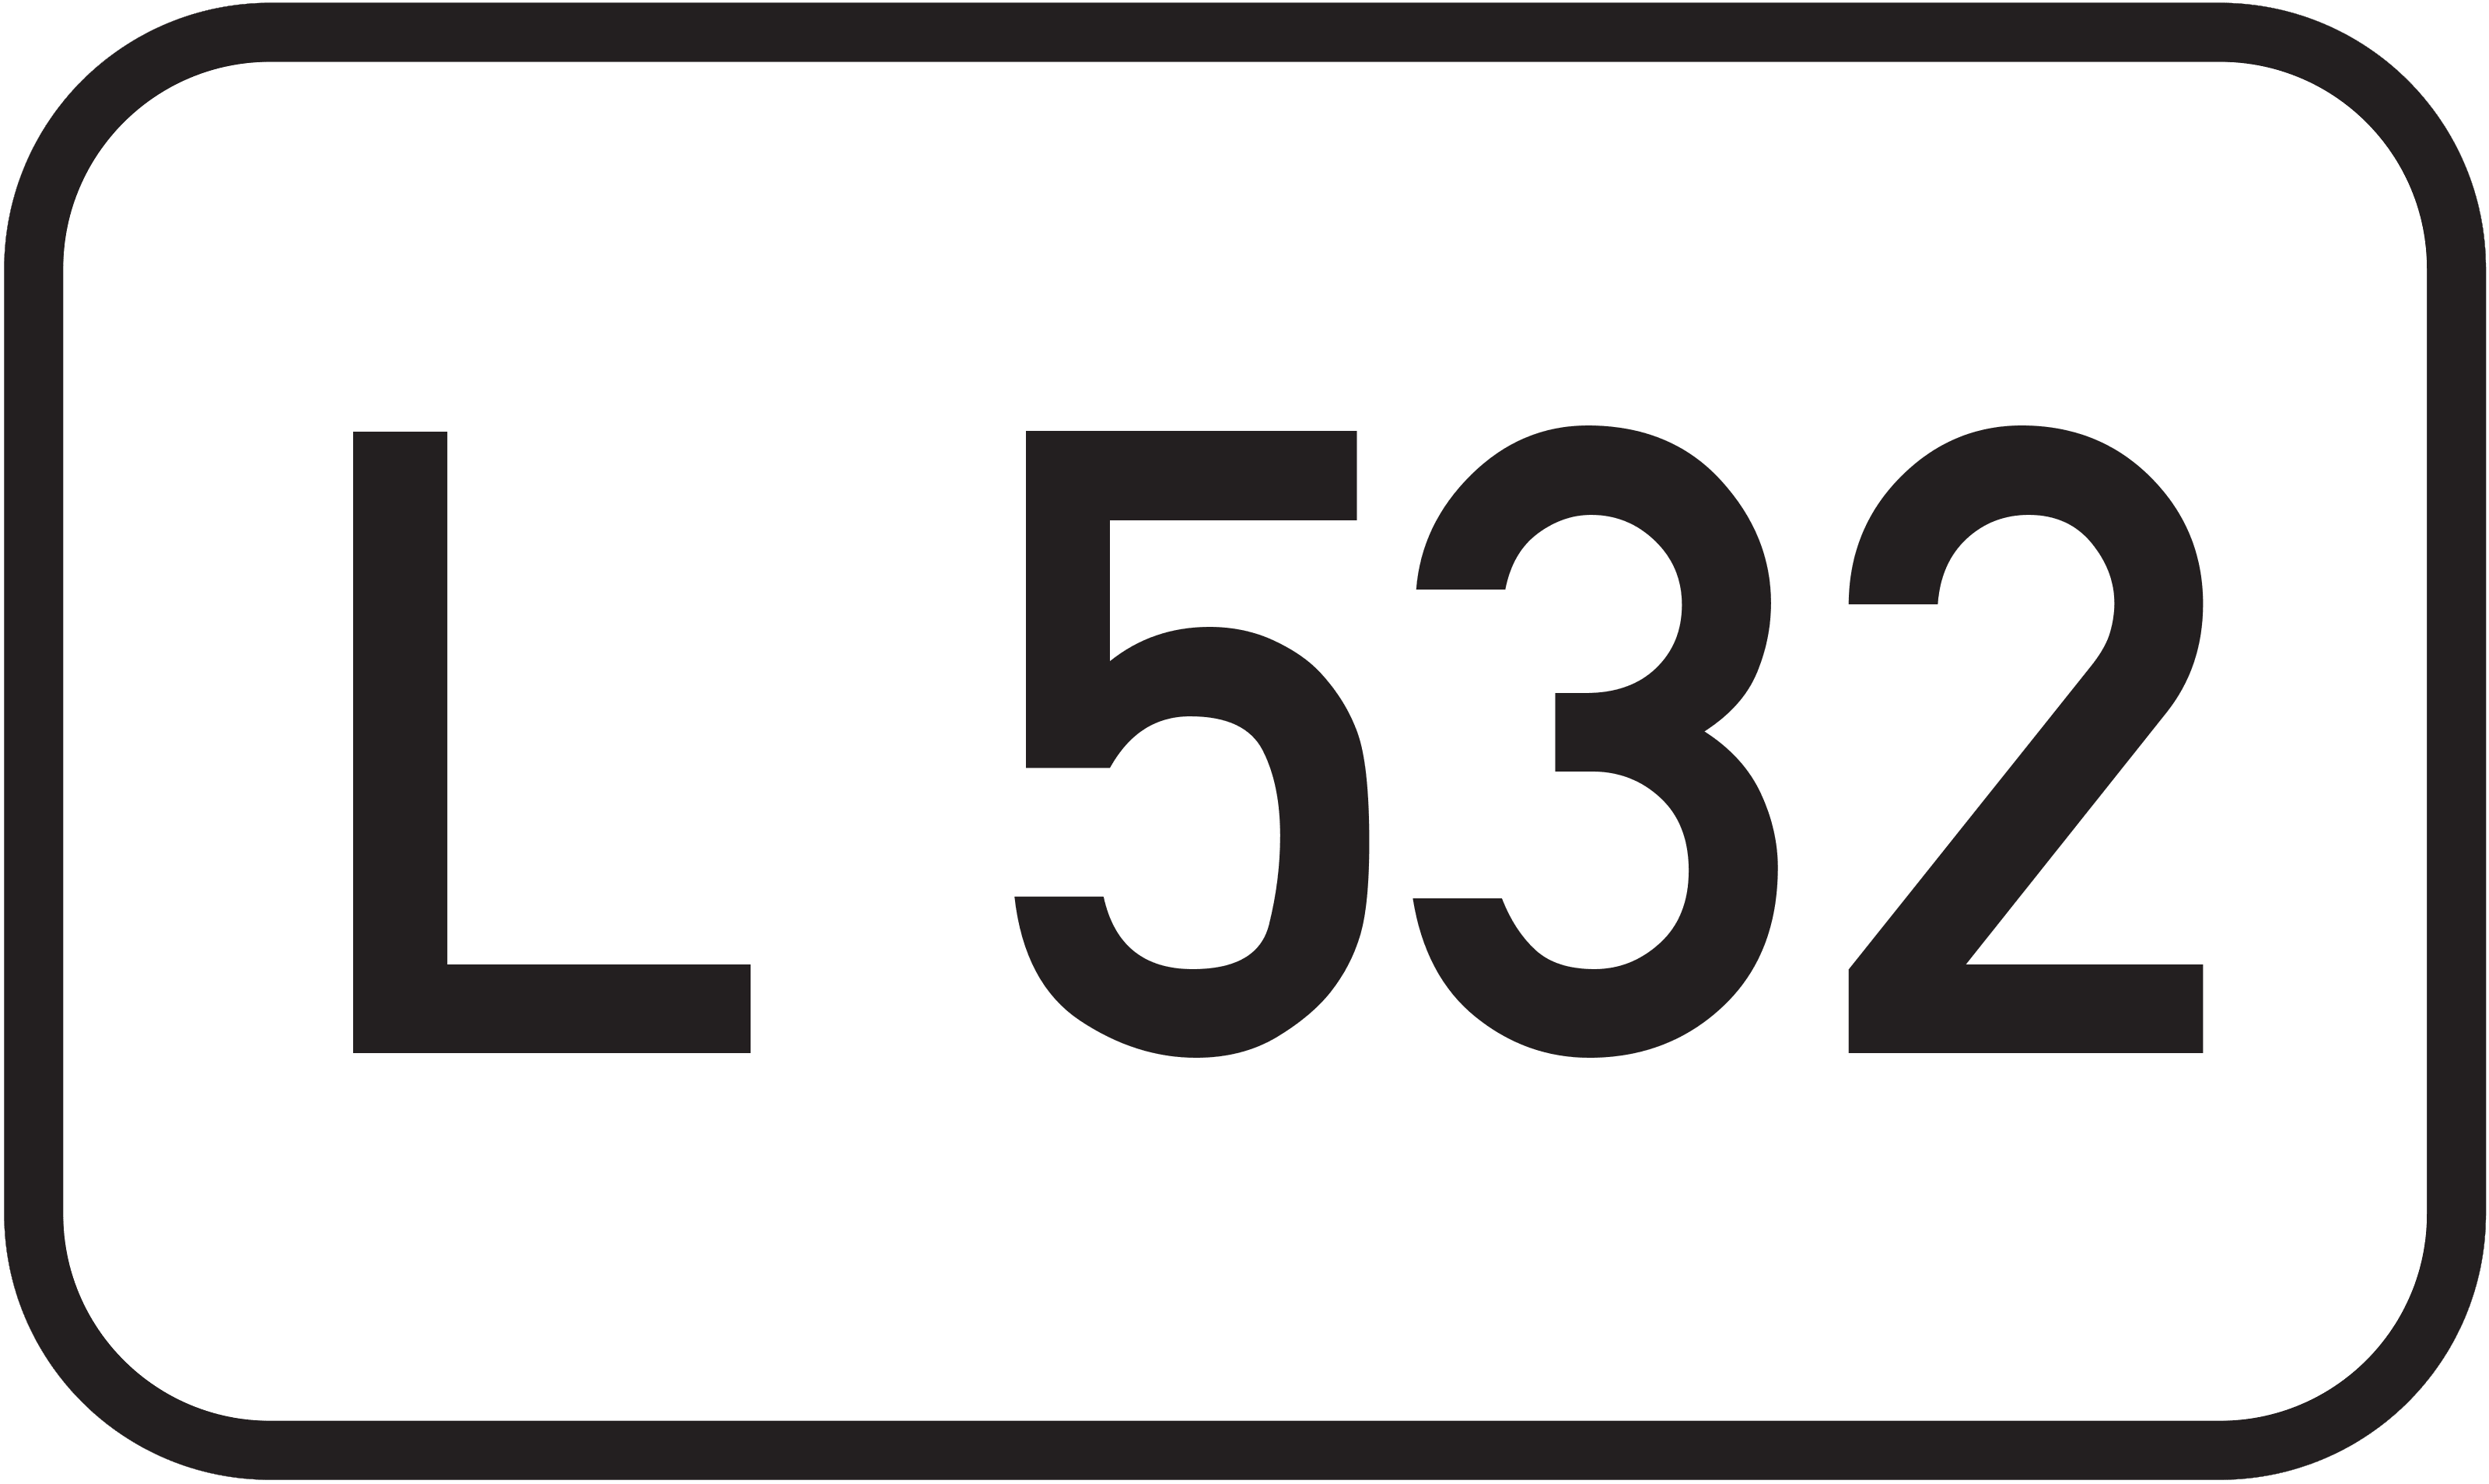 Landesstraße L 532